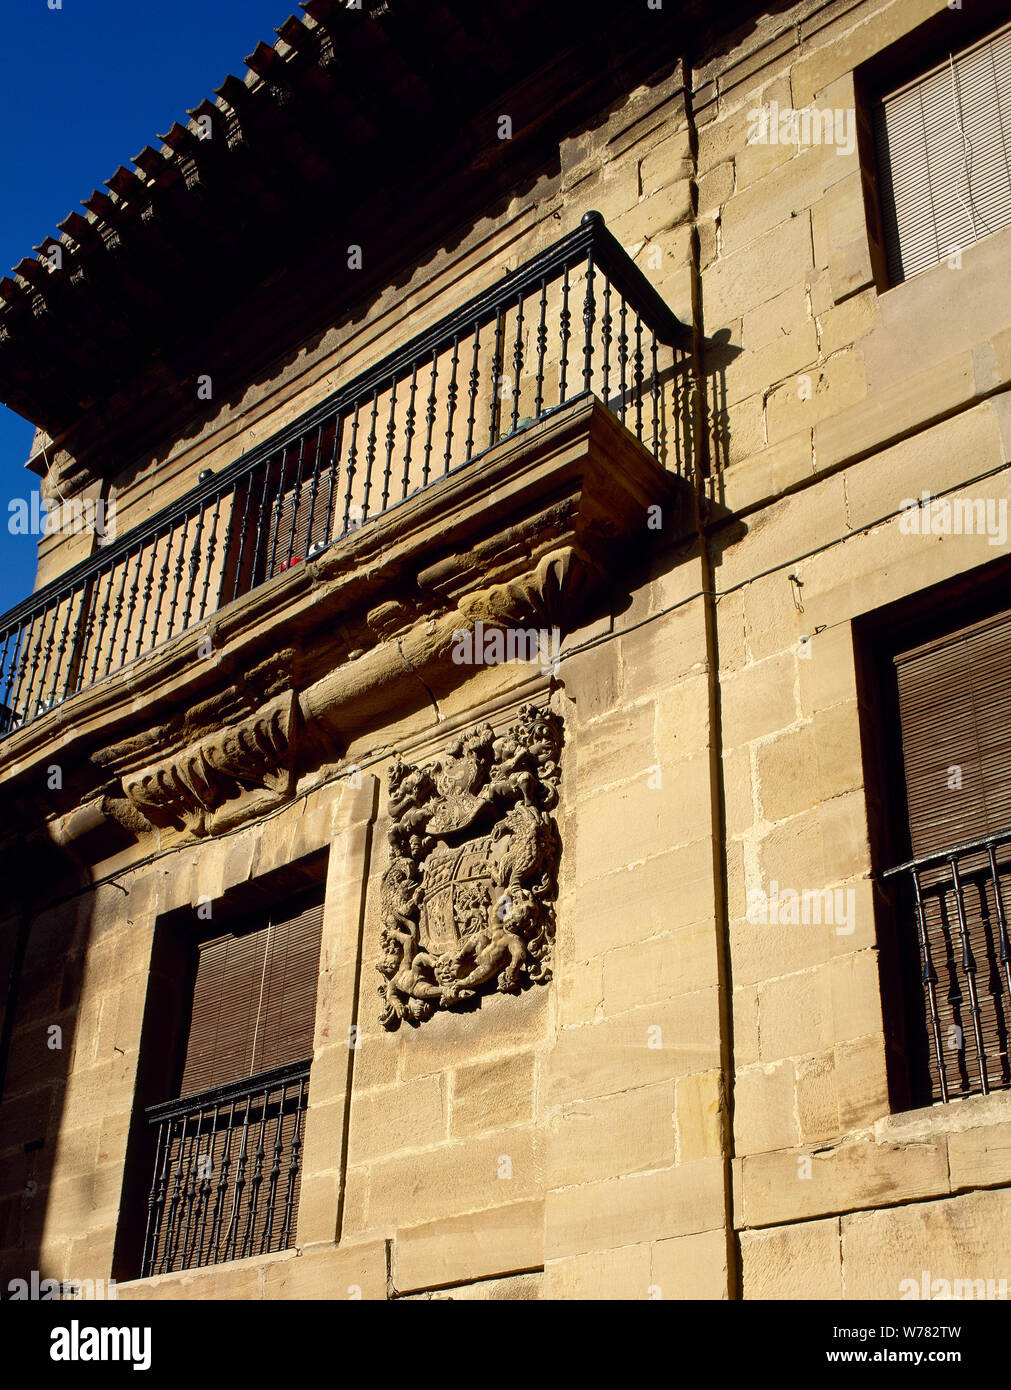 Spanien. La Rioja. San Asensio. Edles mit heraldischen Schild an der Fassade. Architektonisches detail. Stockfoto